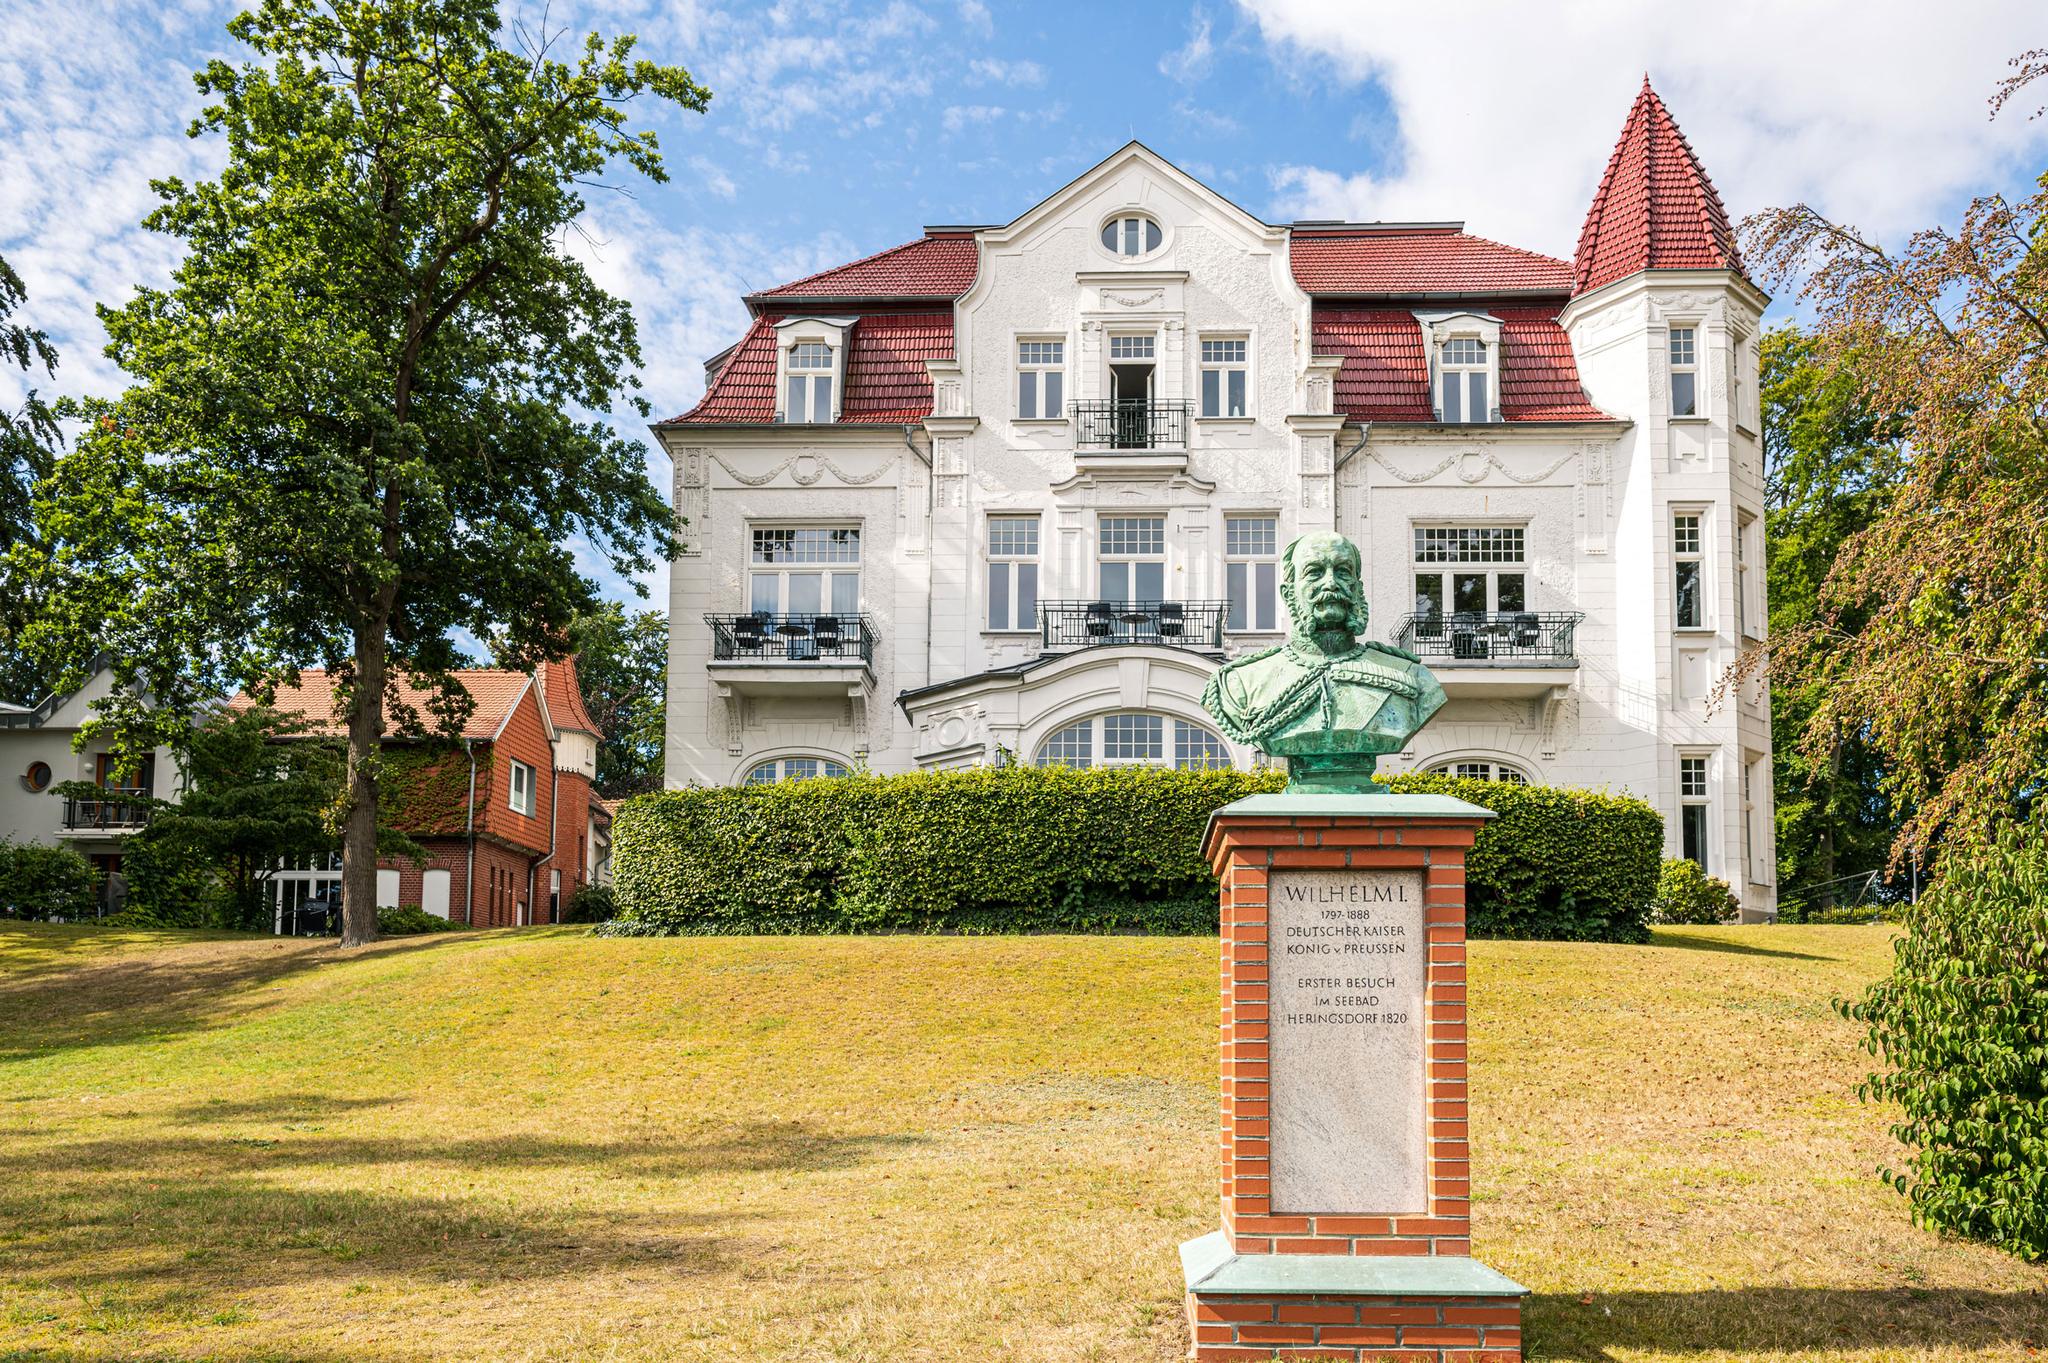 Villa Staudt mit Kaiser Wilhelm Statue in Heringsdorf